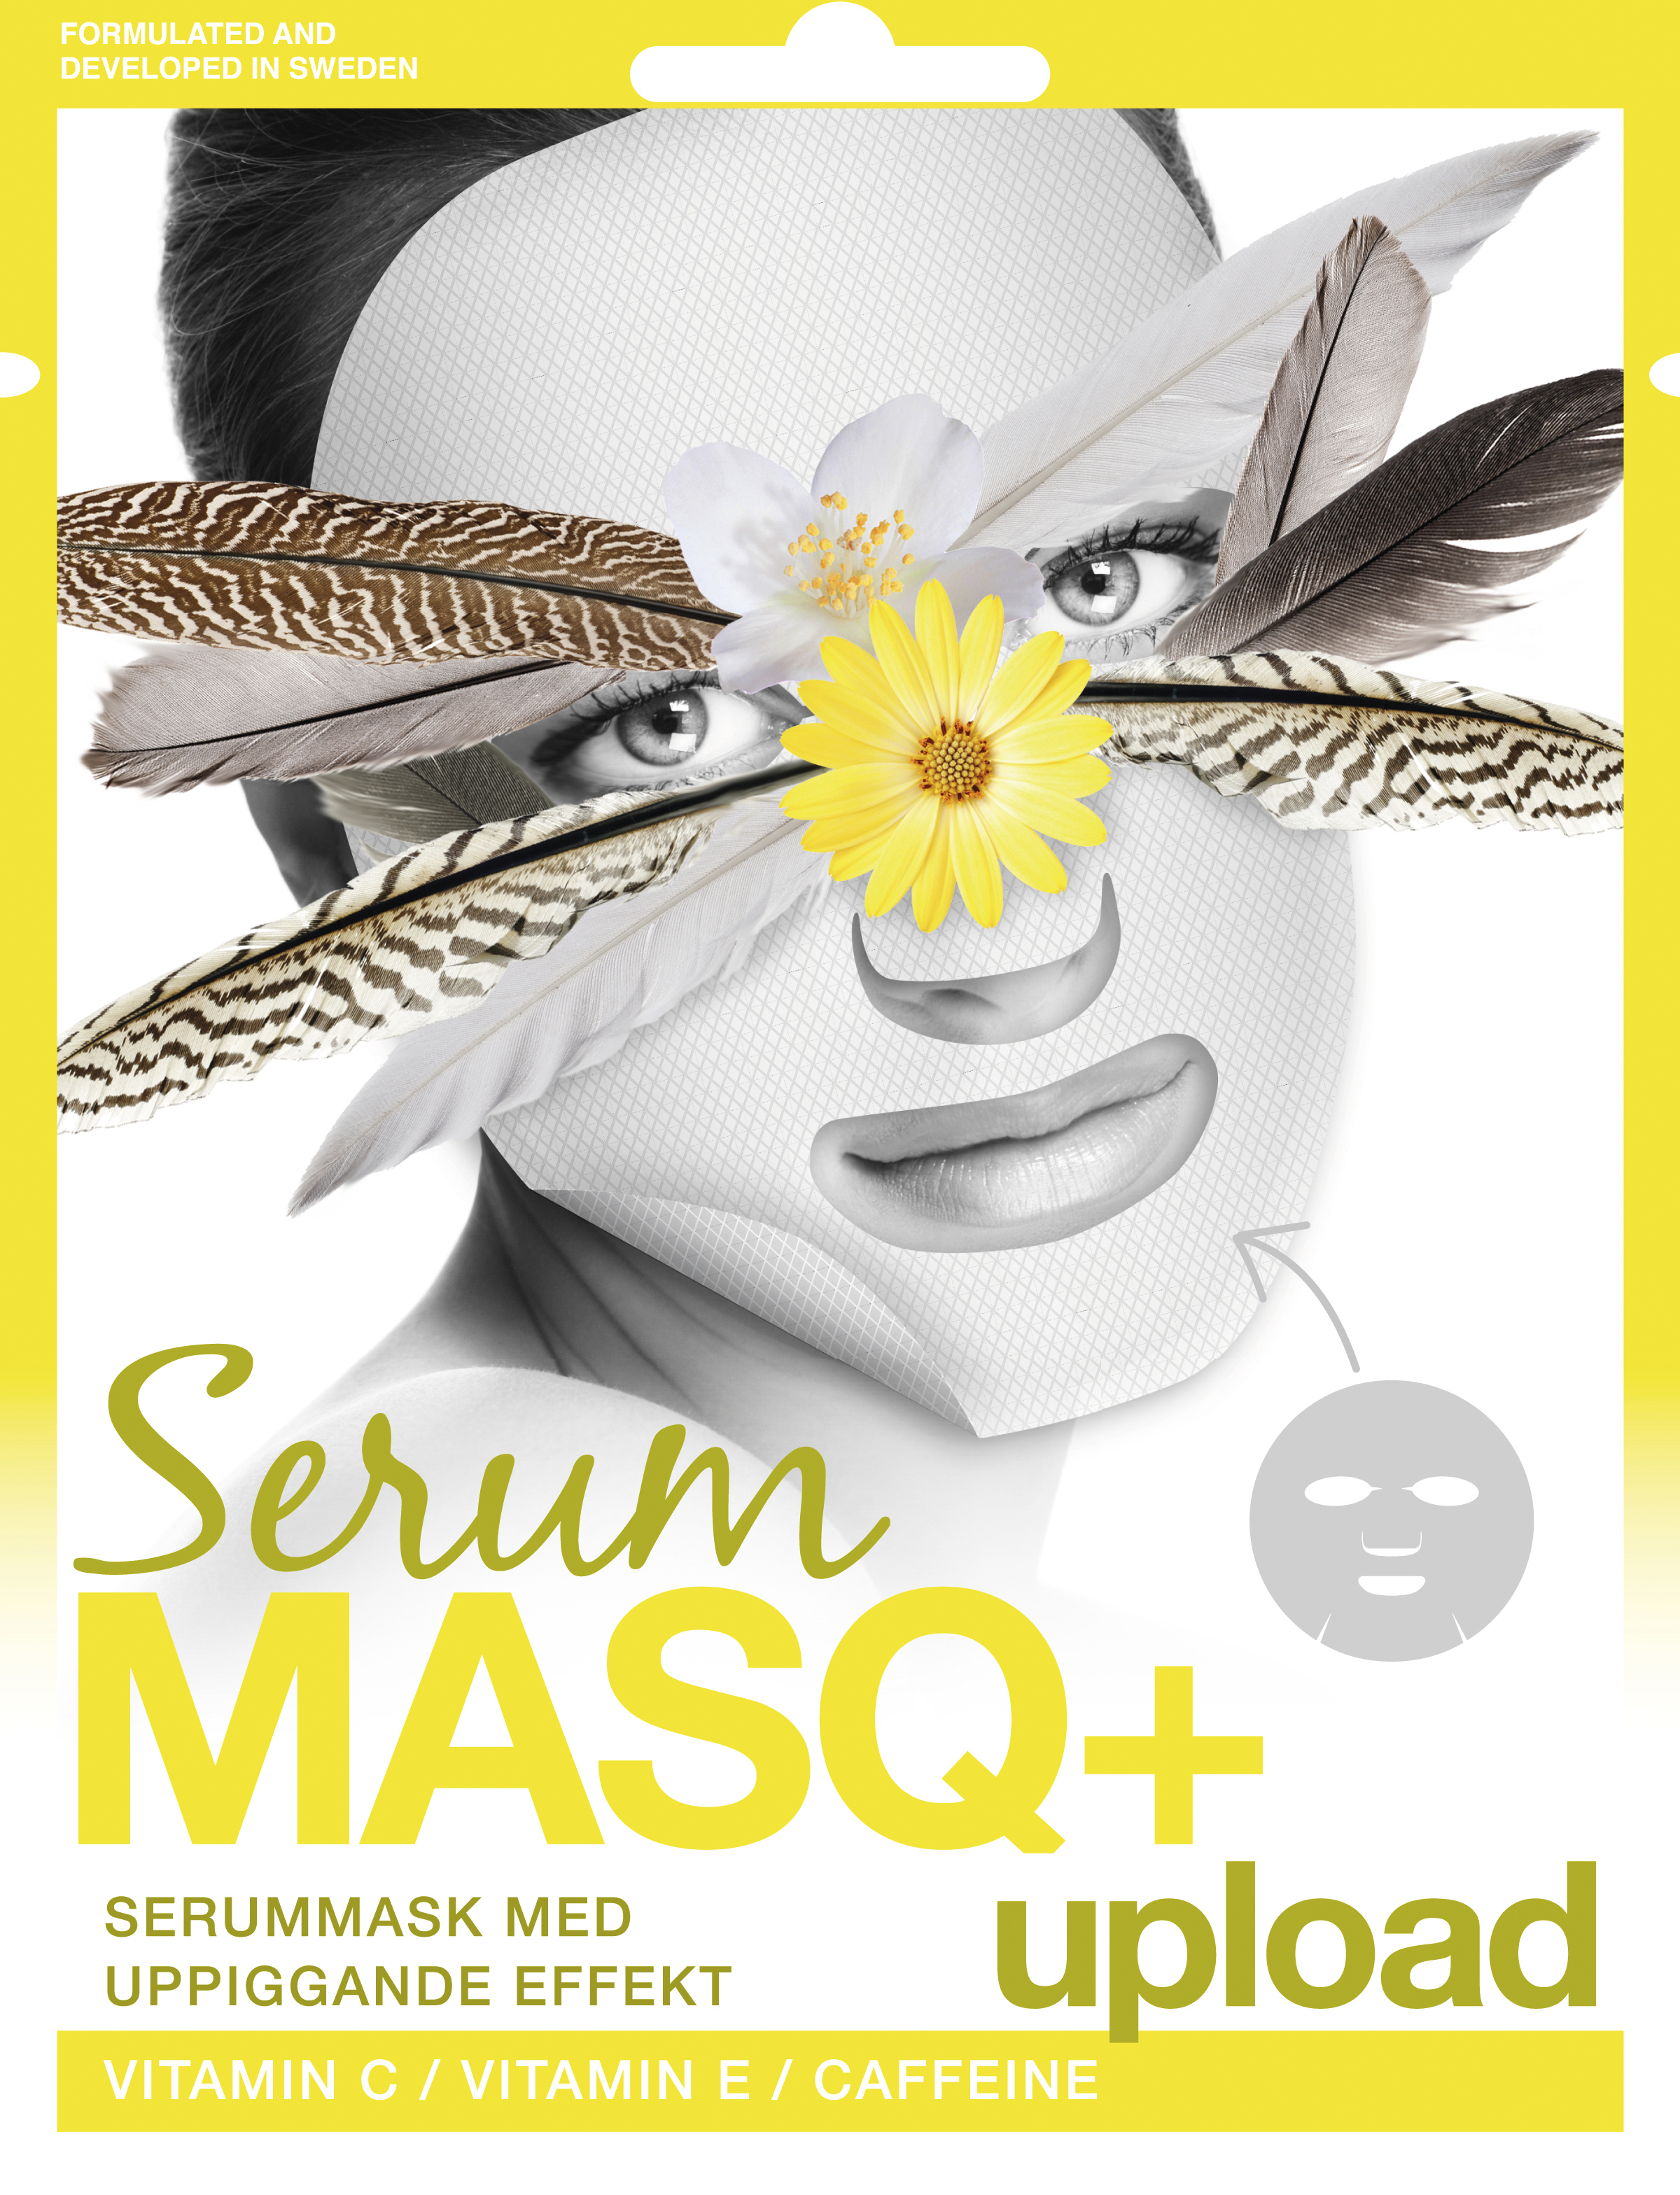 Serum Masq+ Upload